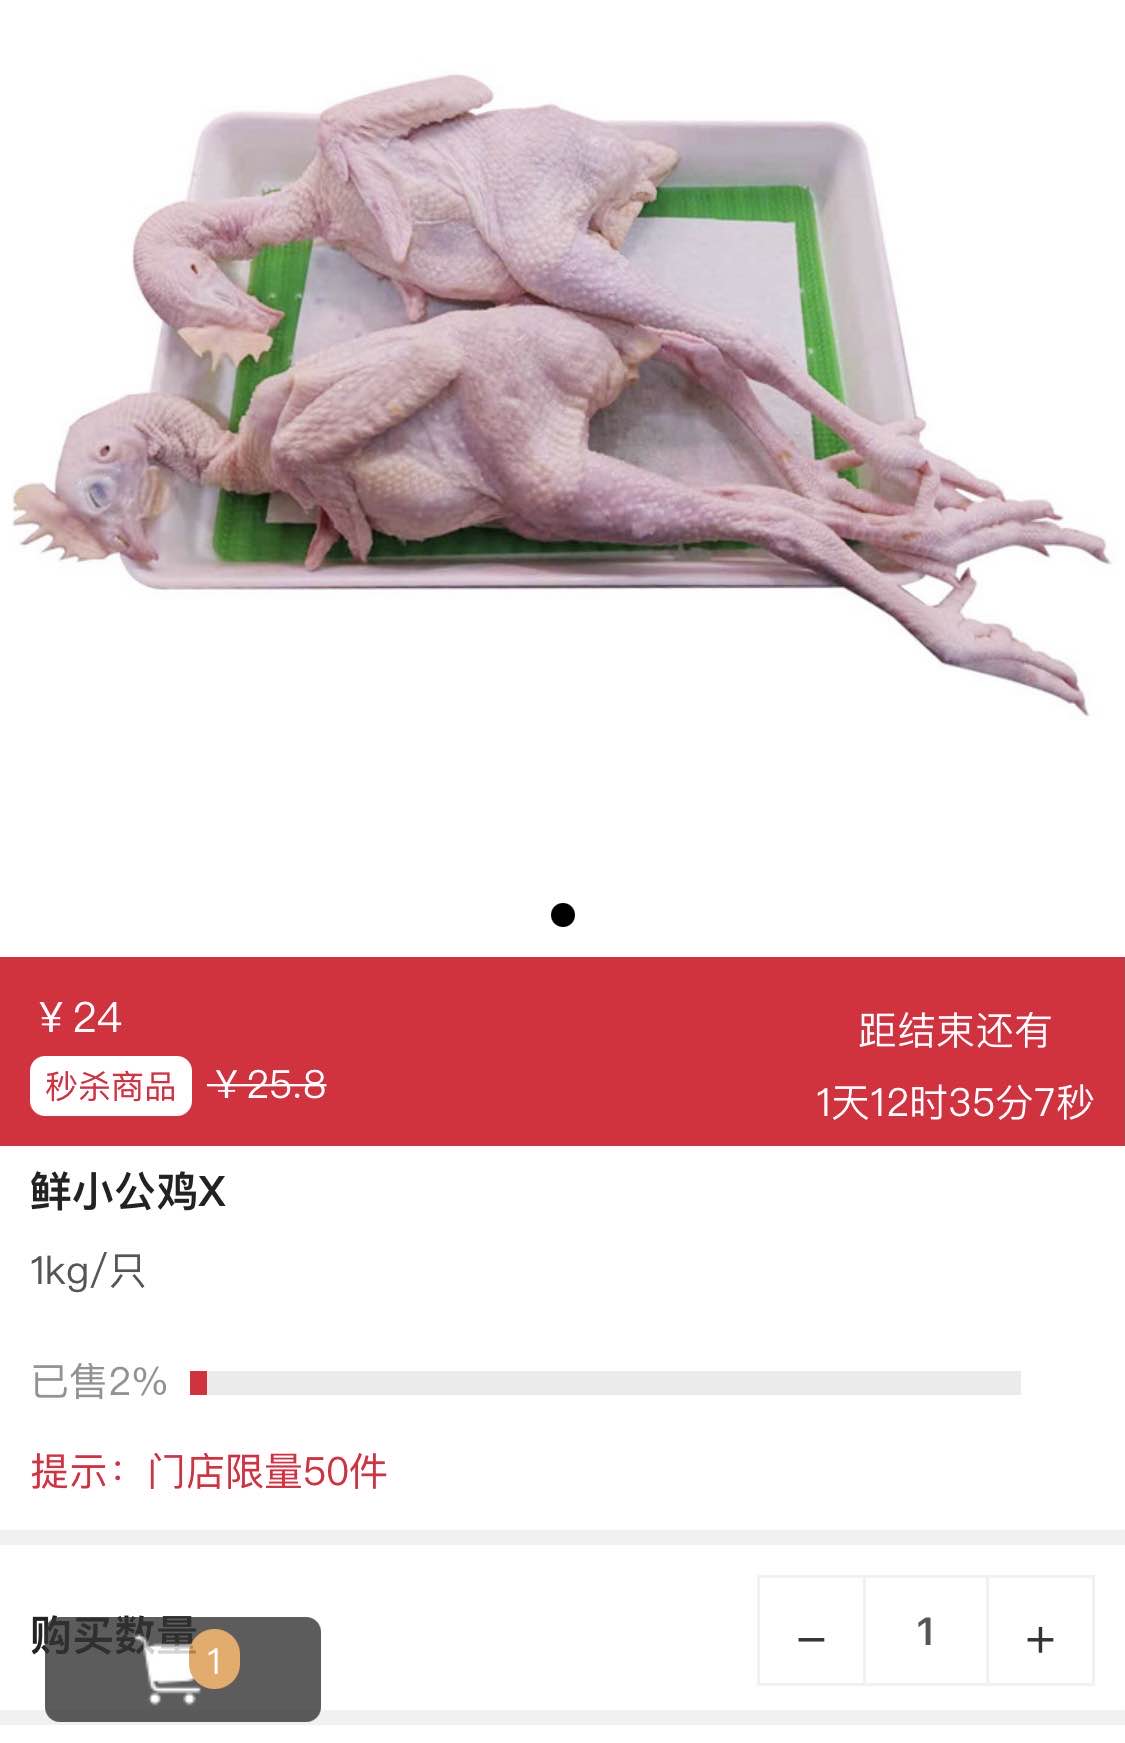 社区团购小公鸡24元2斤贵么-惠小助(52huixz.com)